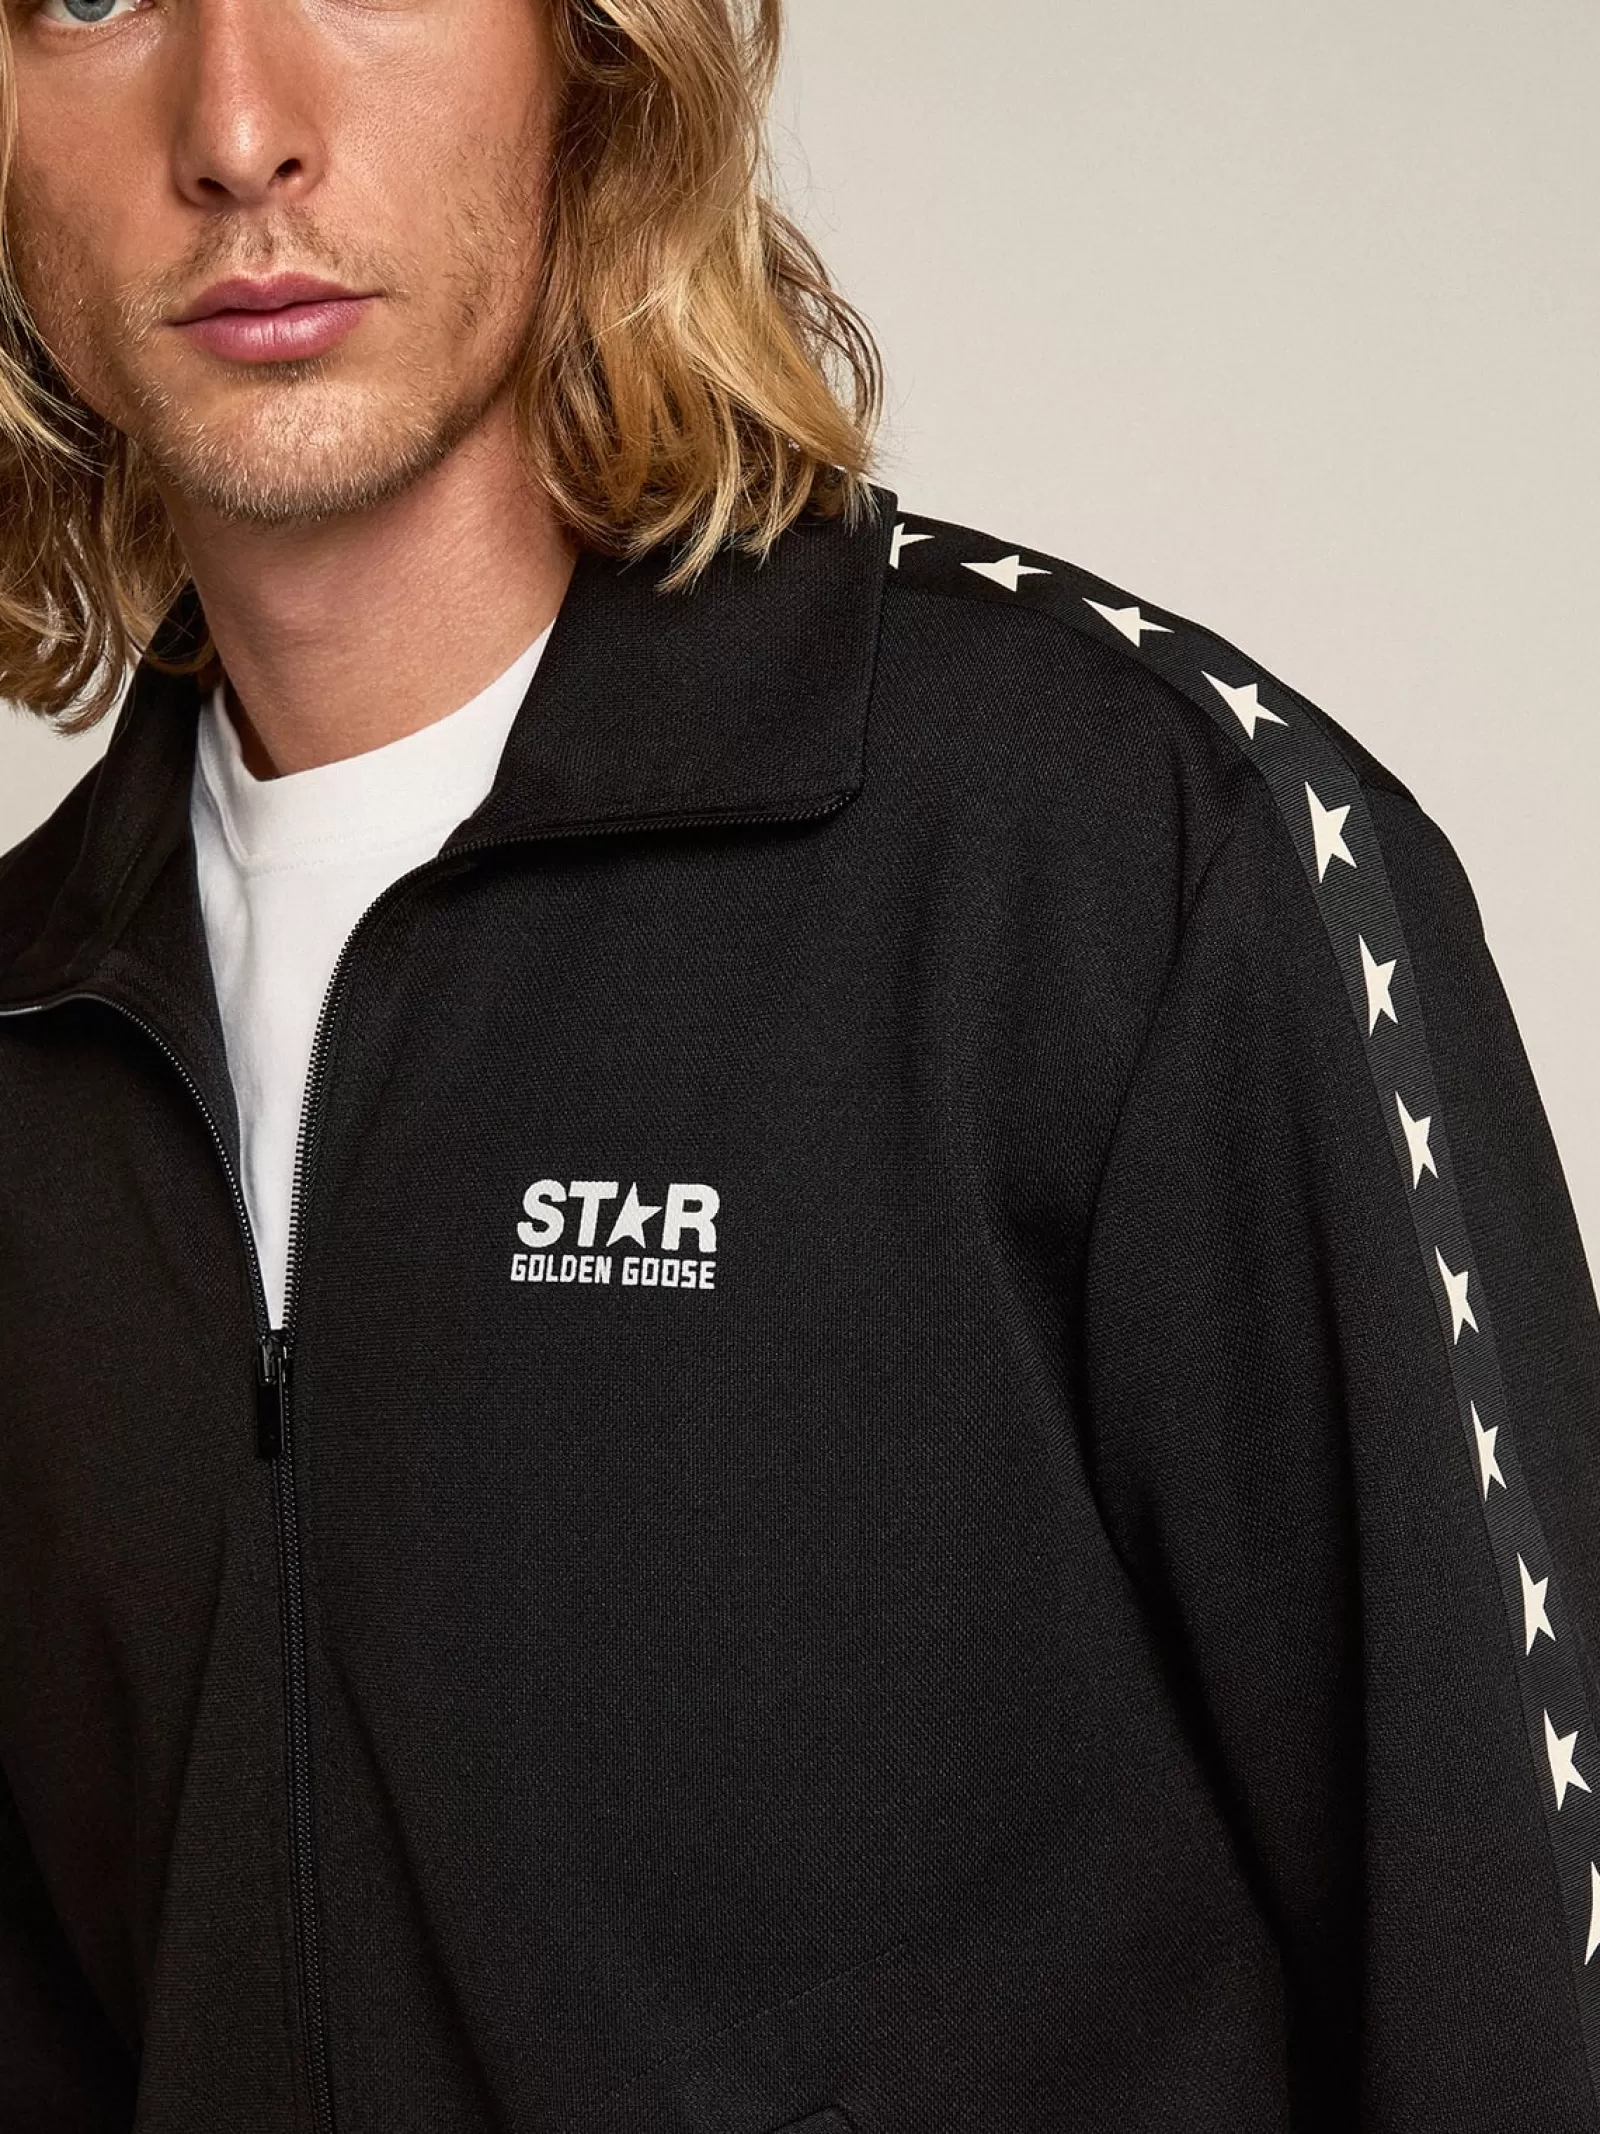 Sweat-shirt zippé homme couleur noire avec étoiles blanches | Golden Goose Online